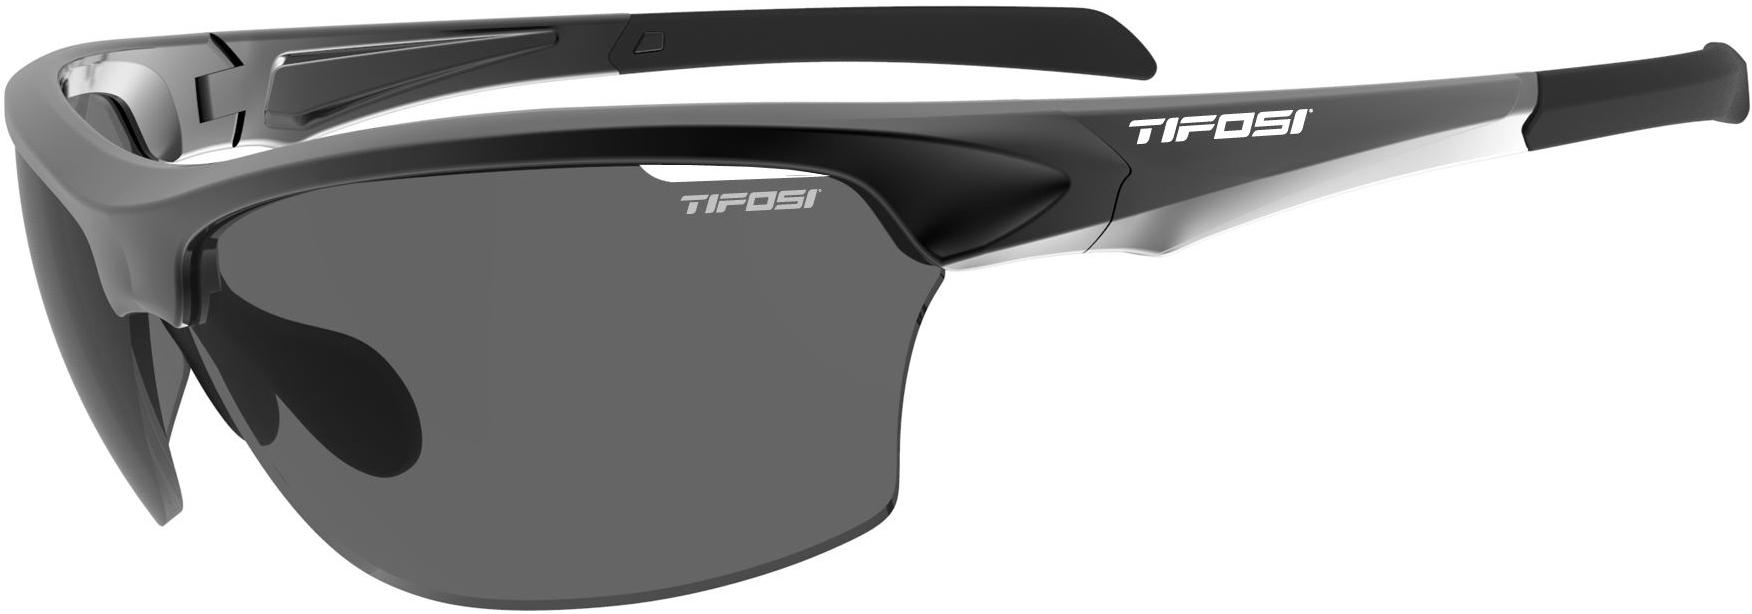 Tifosi Eyewear Intense Sunglasses - Black